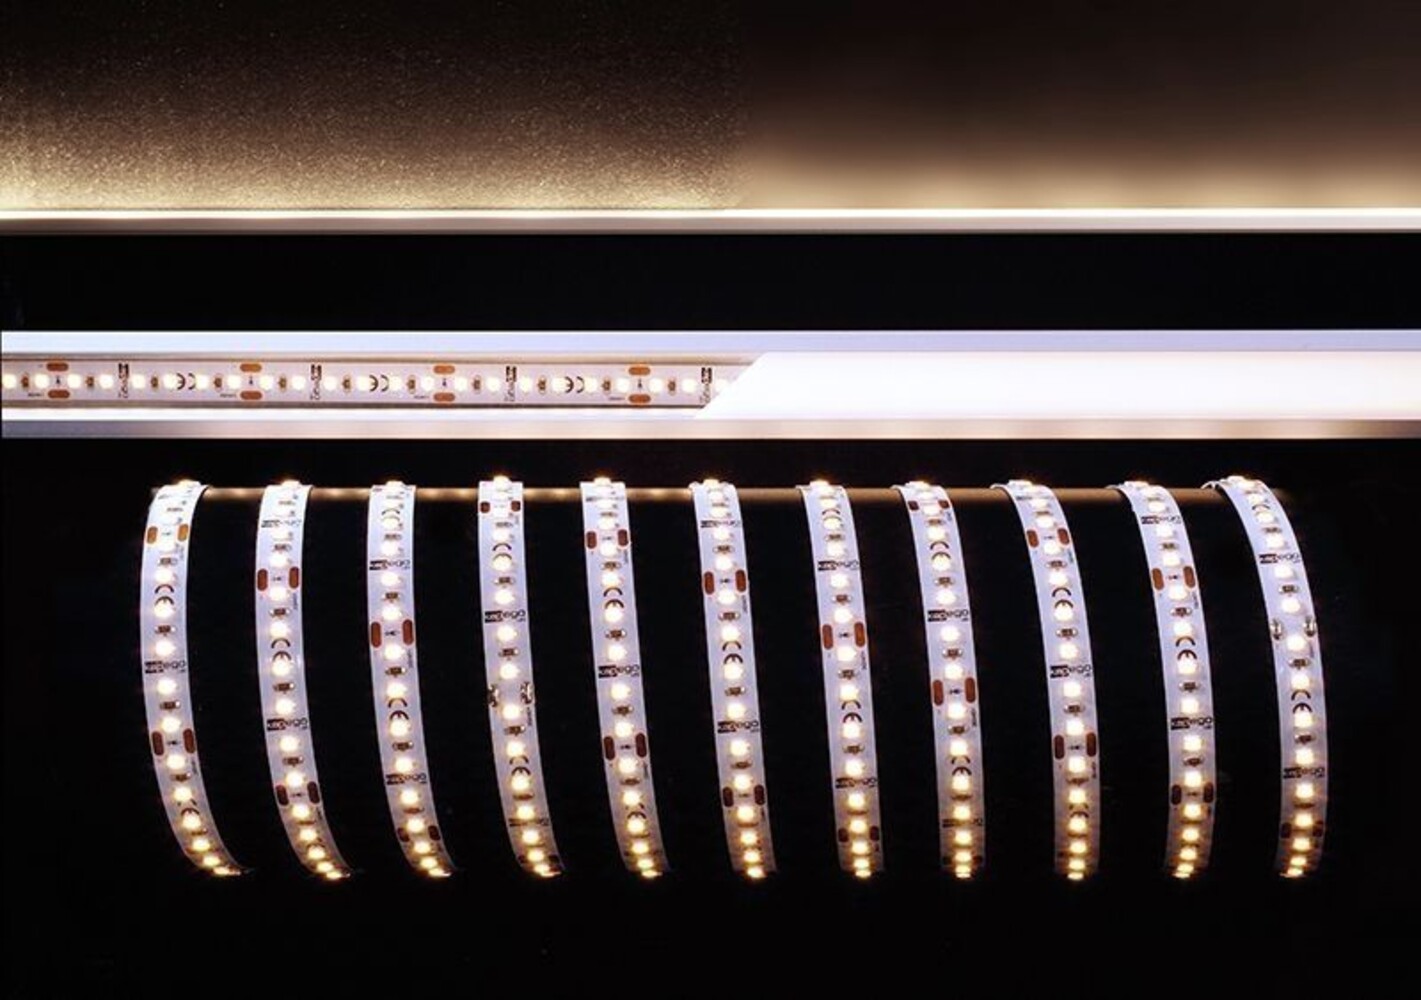 Flexibler LED Streifen von der Marke Deko-Light in warmer Lichtfarbe